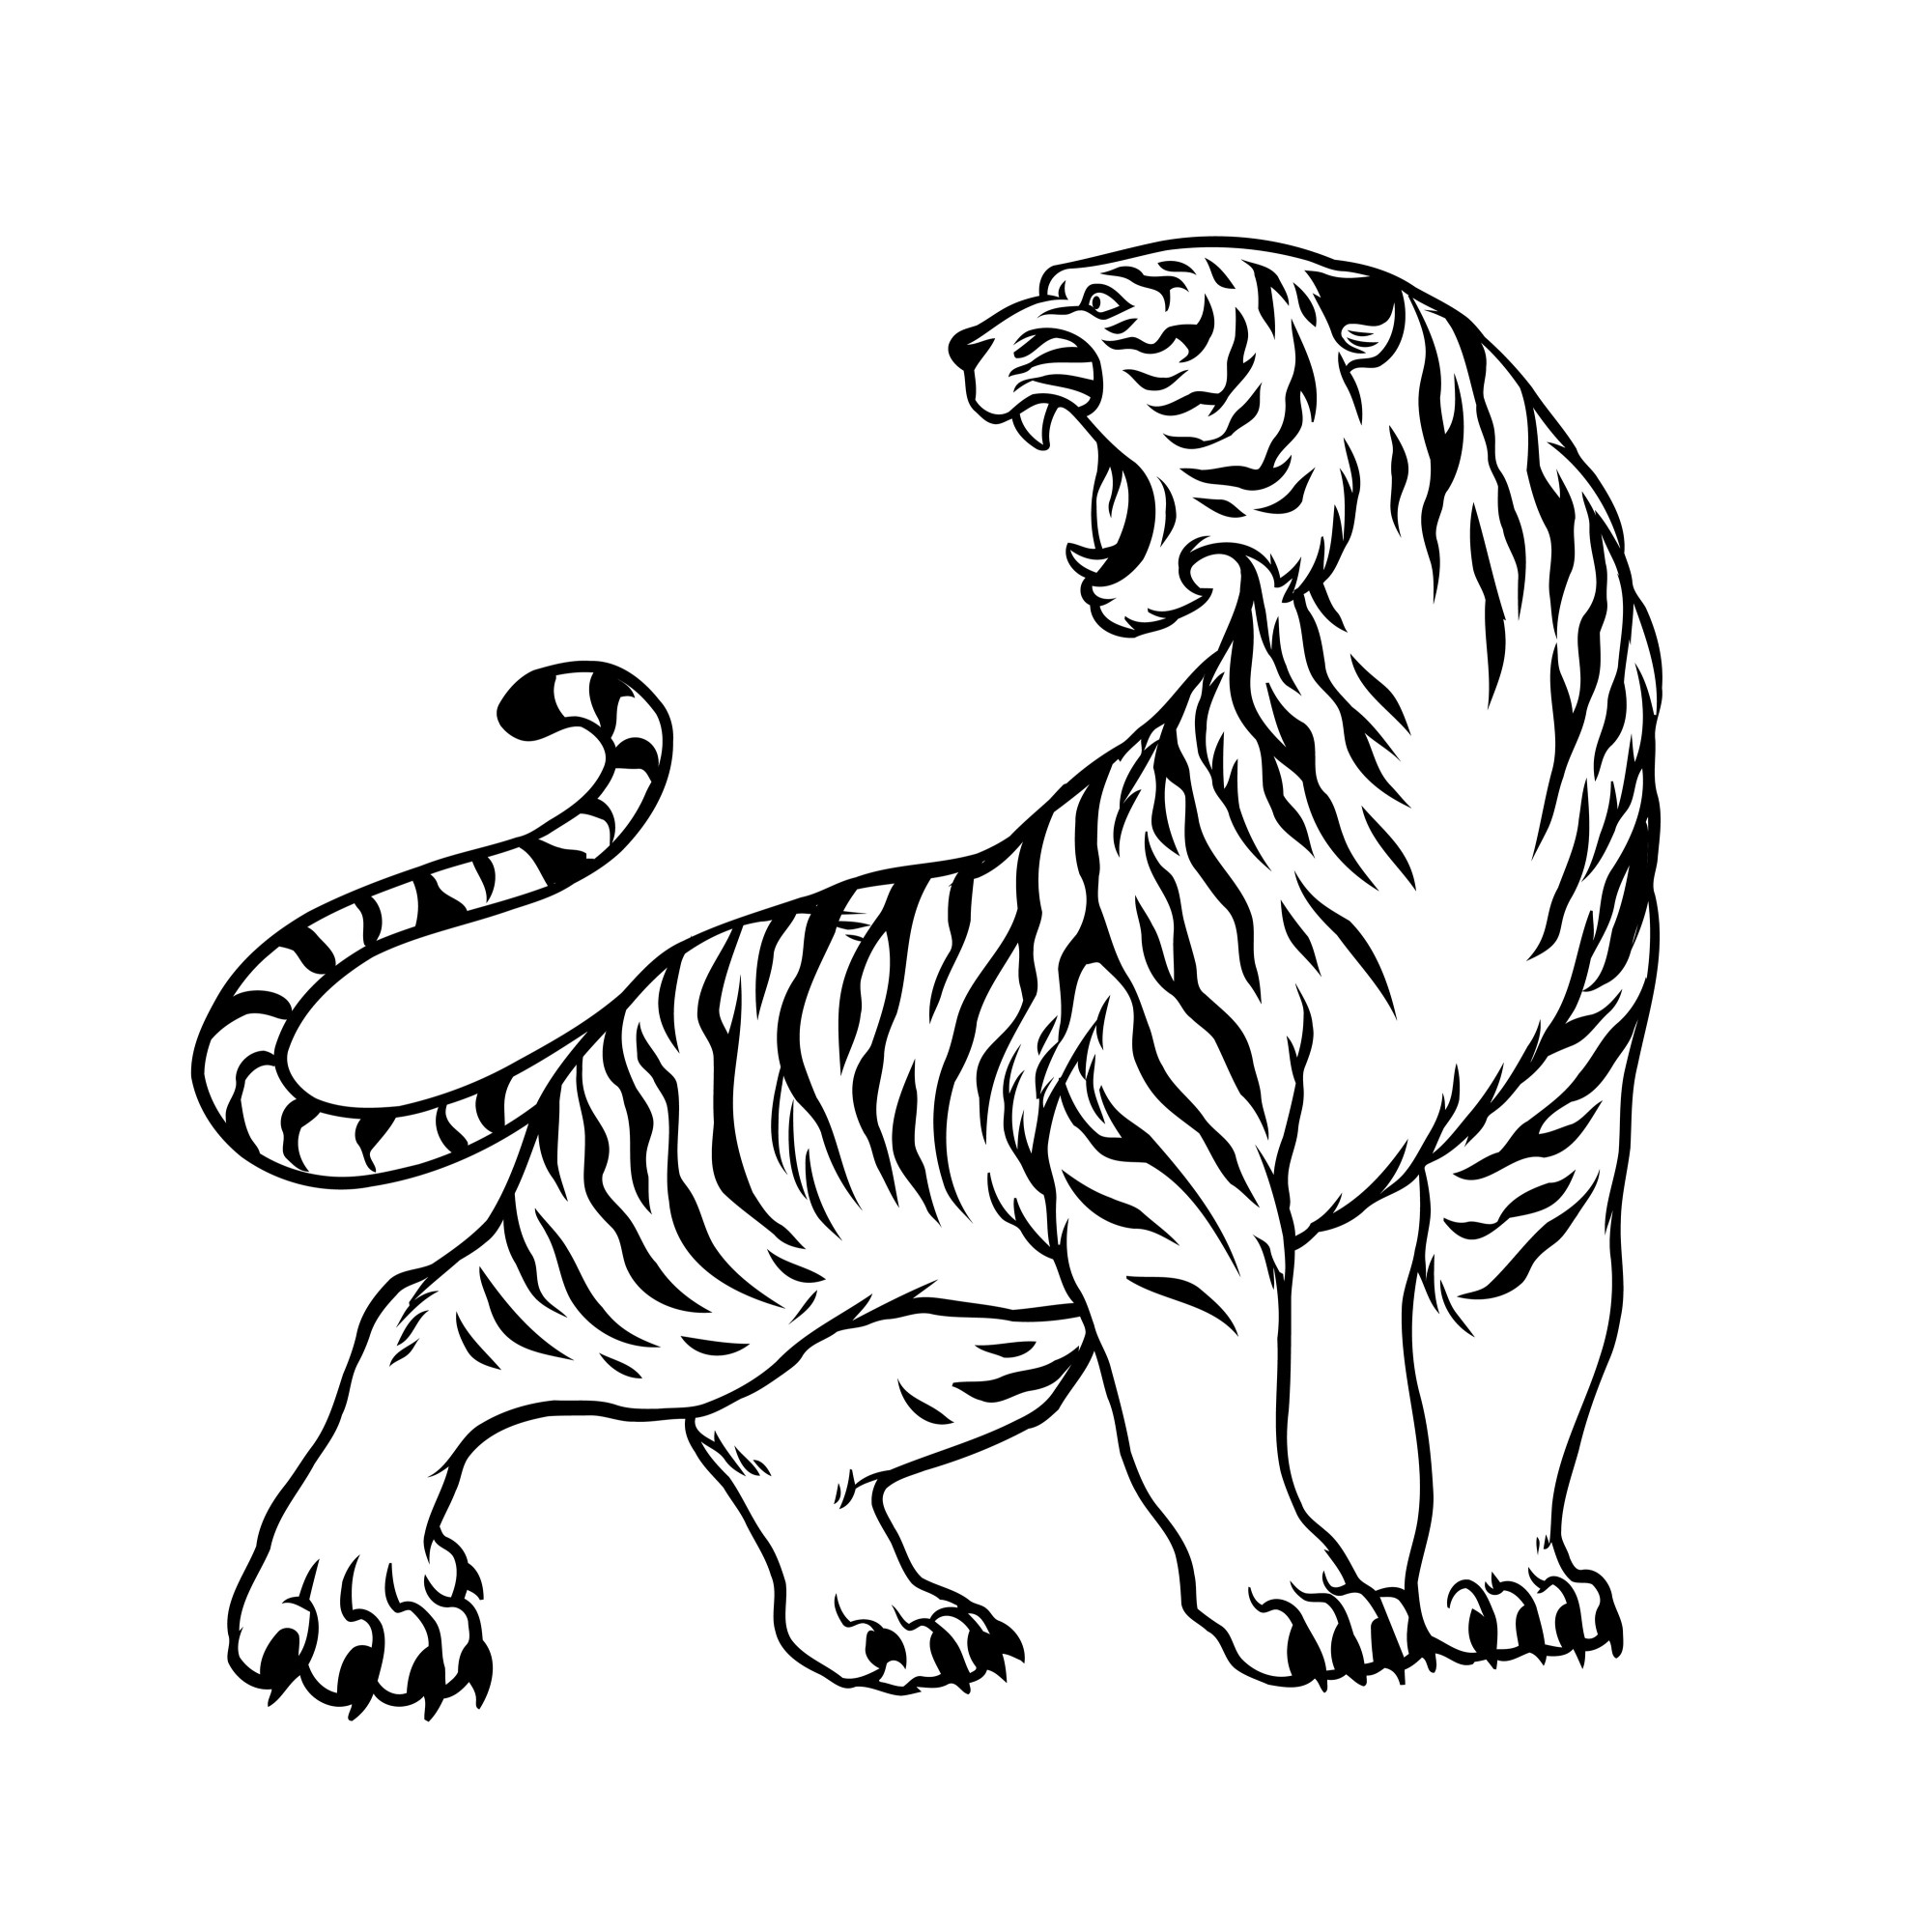 Раскраска для детей: злой тигр с когтями